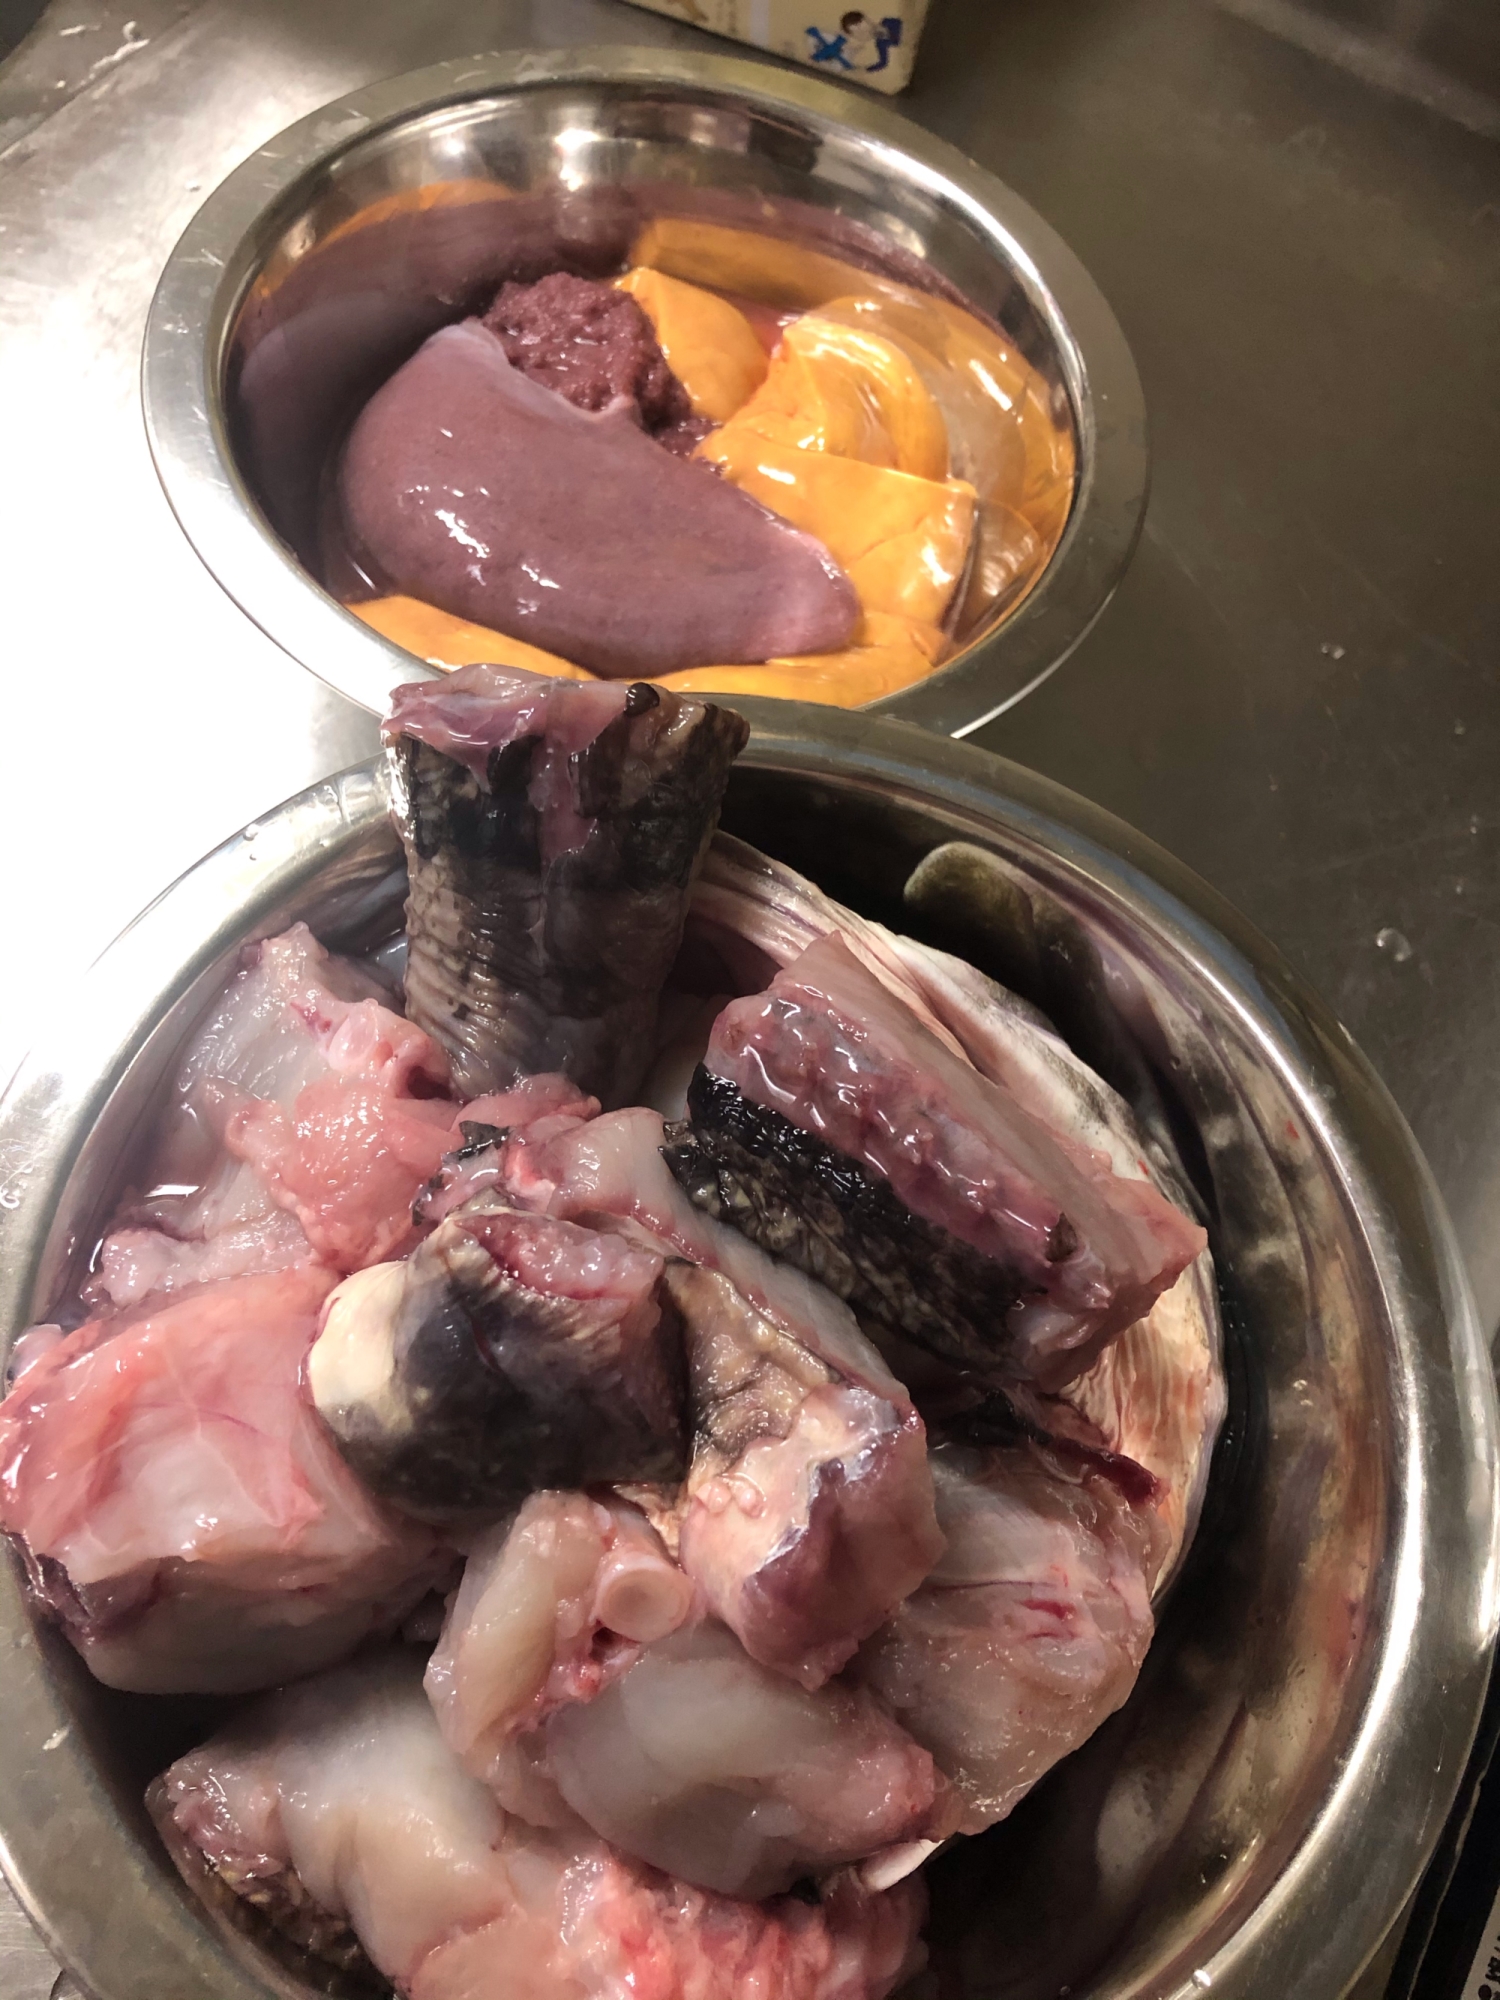 【魚の捌き方】カジカ編〜鍋にぴったりの北海道の魚